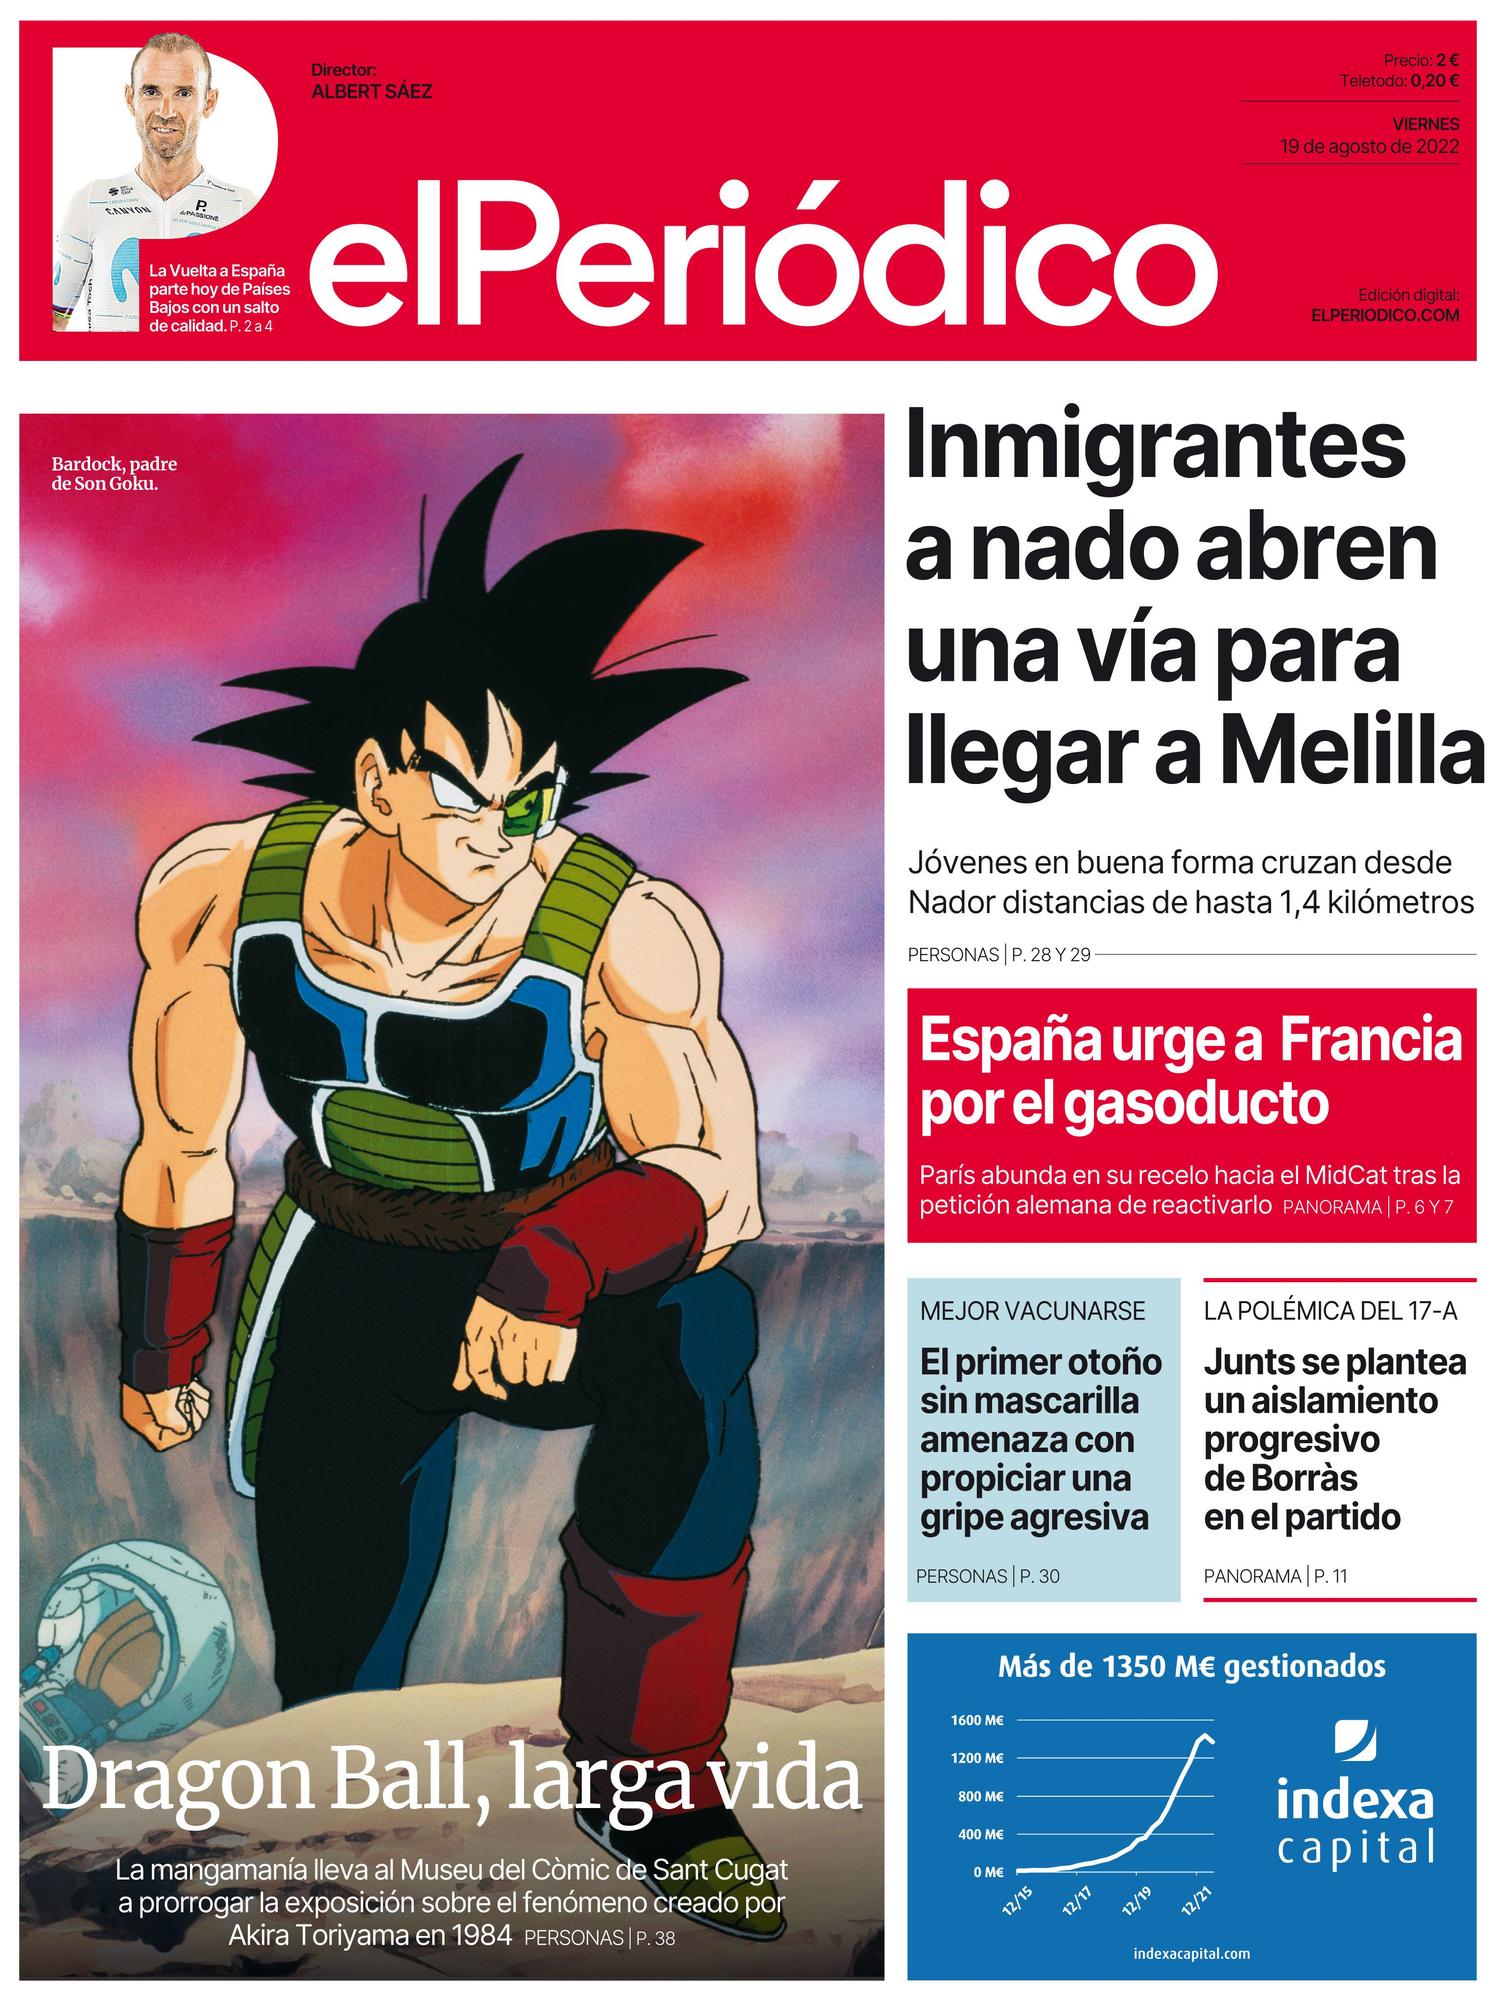 La portada de EL PERIÓDICO del 19 de agosto